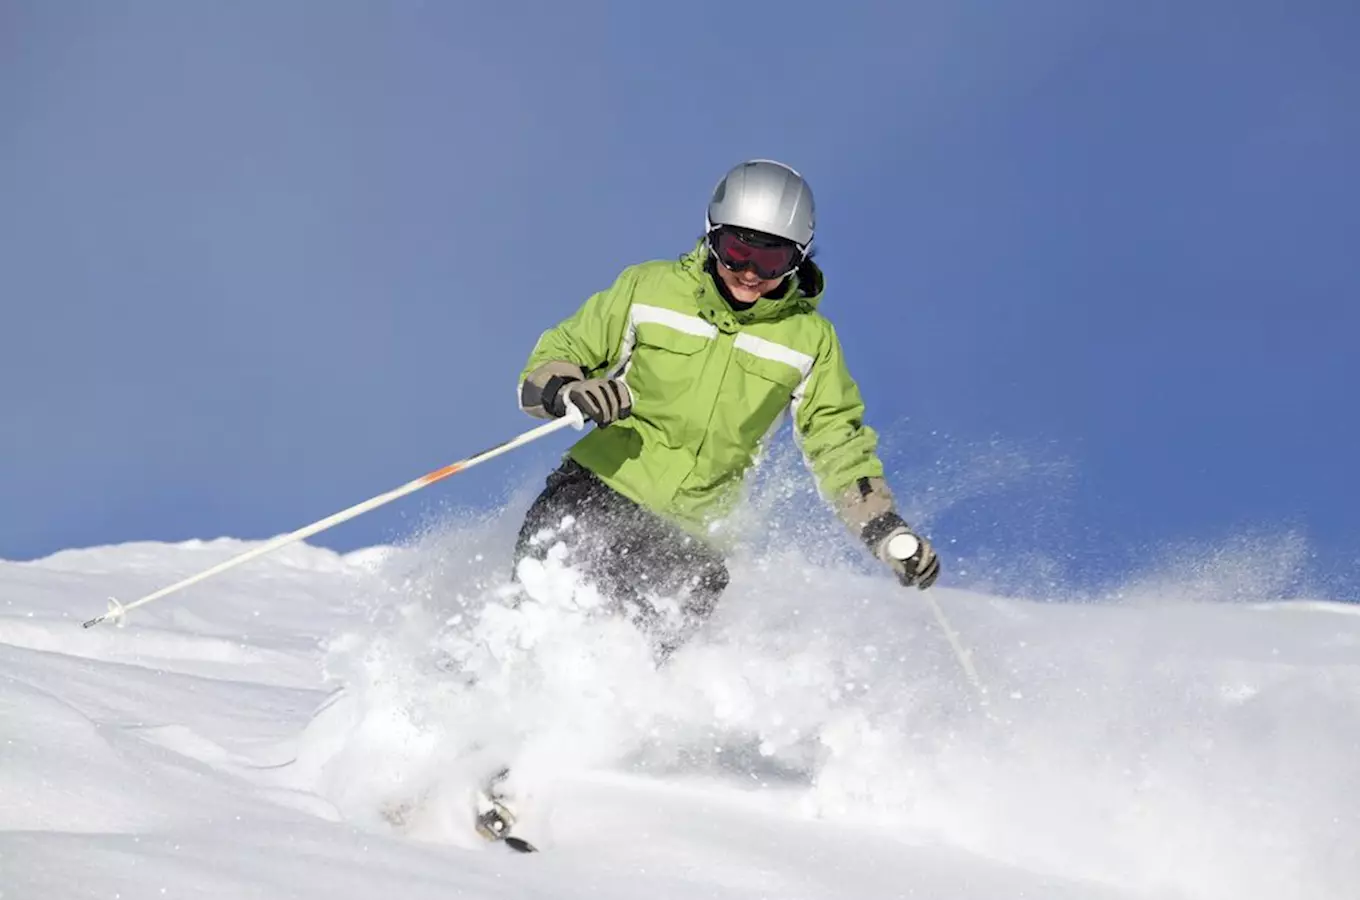 Užijte si zábavu v lyžařském areálu Annaberg v Andělské Hoře